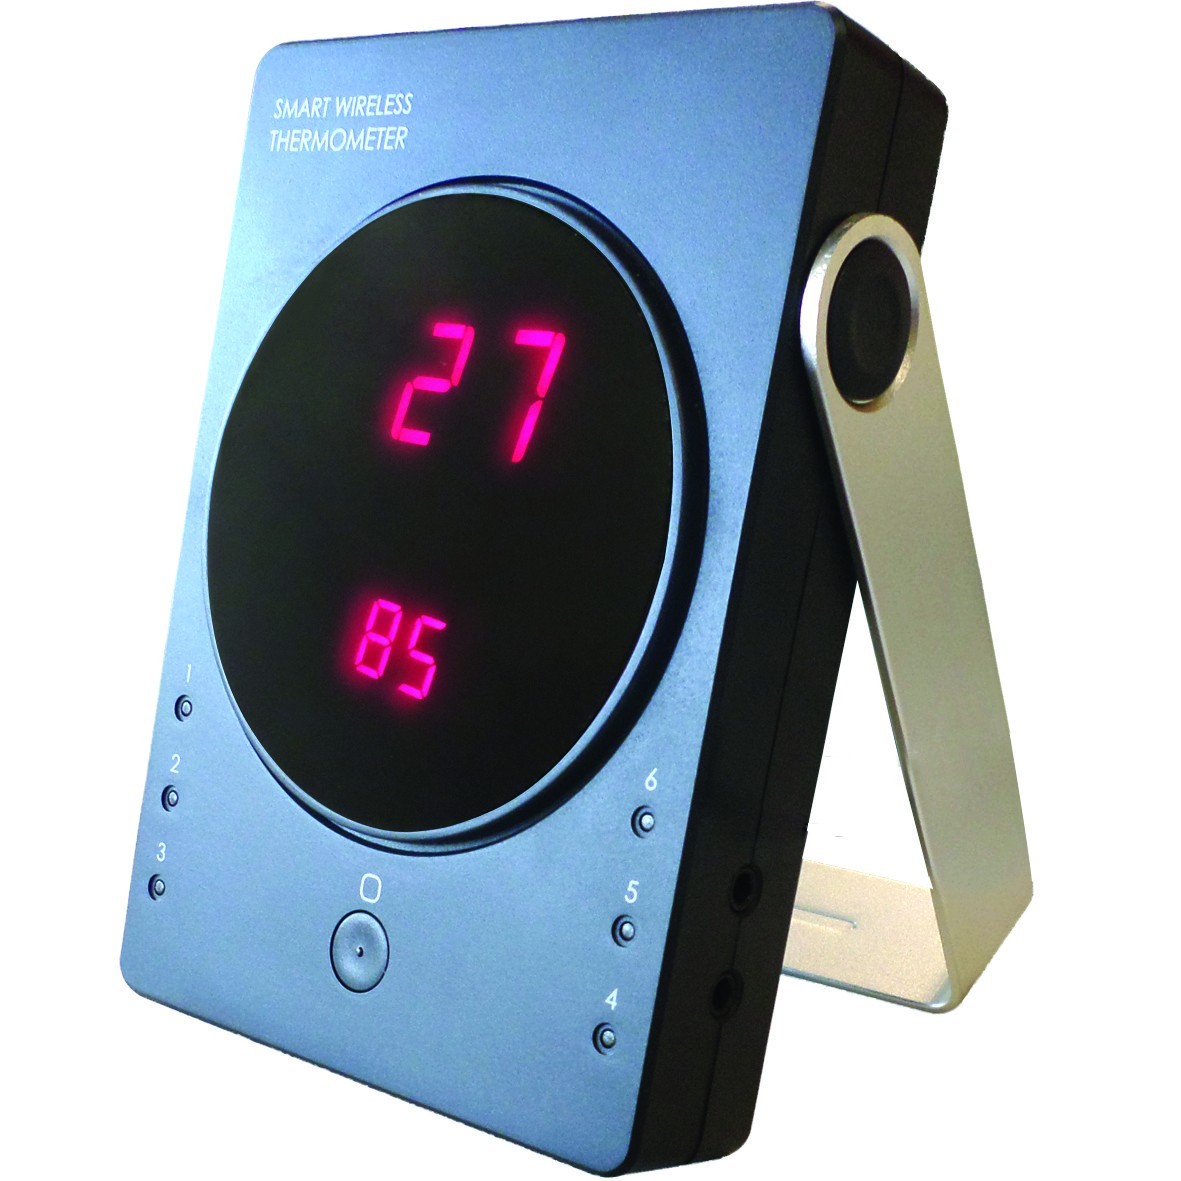 Explorez le thermomètre de four numérique DOT –, thermometre four